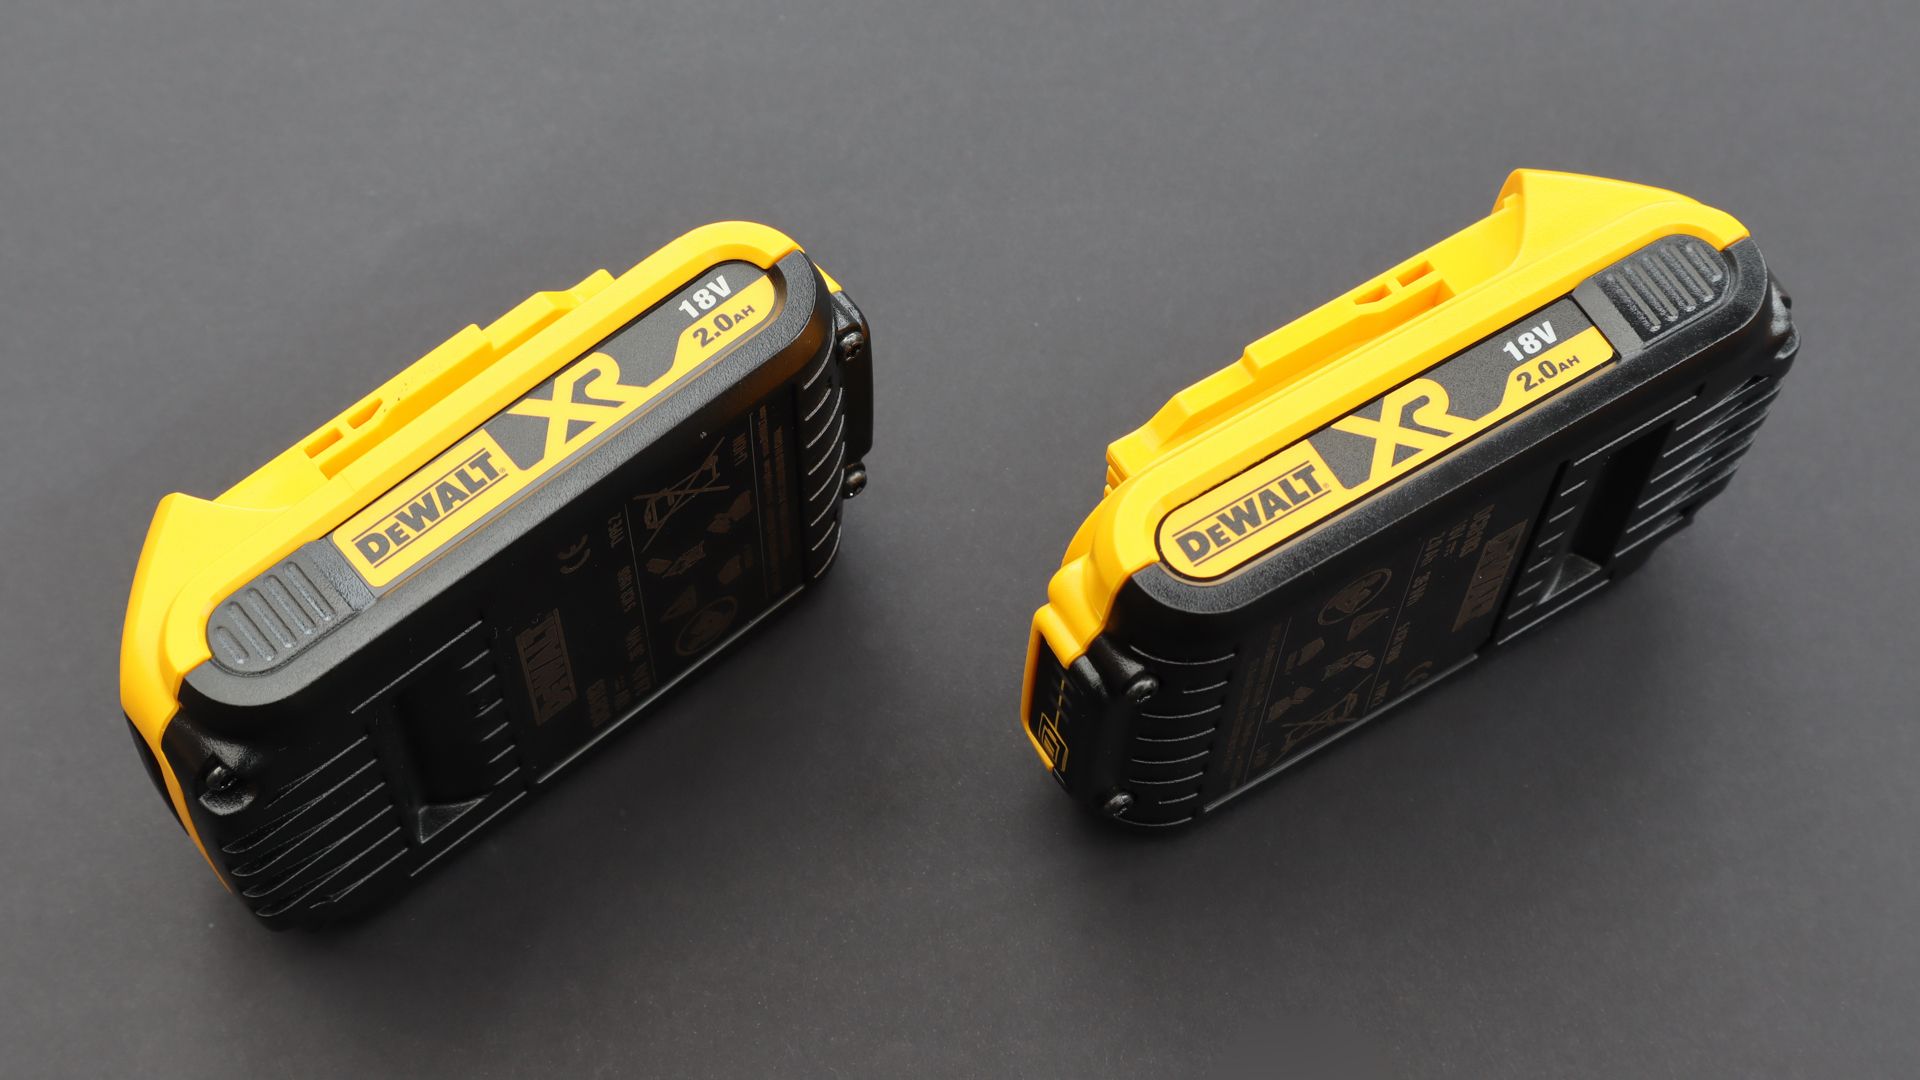 DeWALT power tool battery 2-pack.